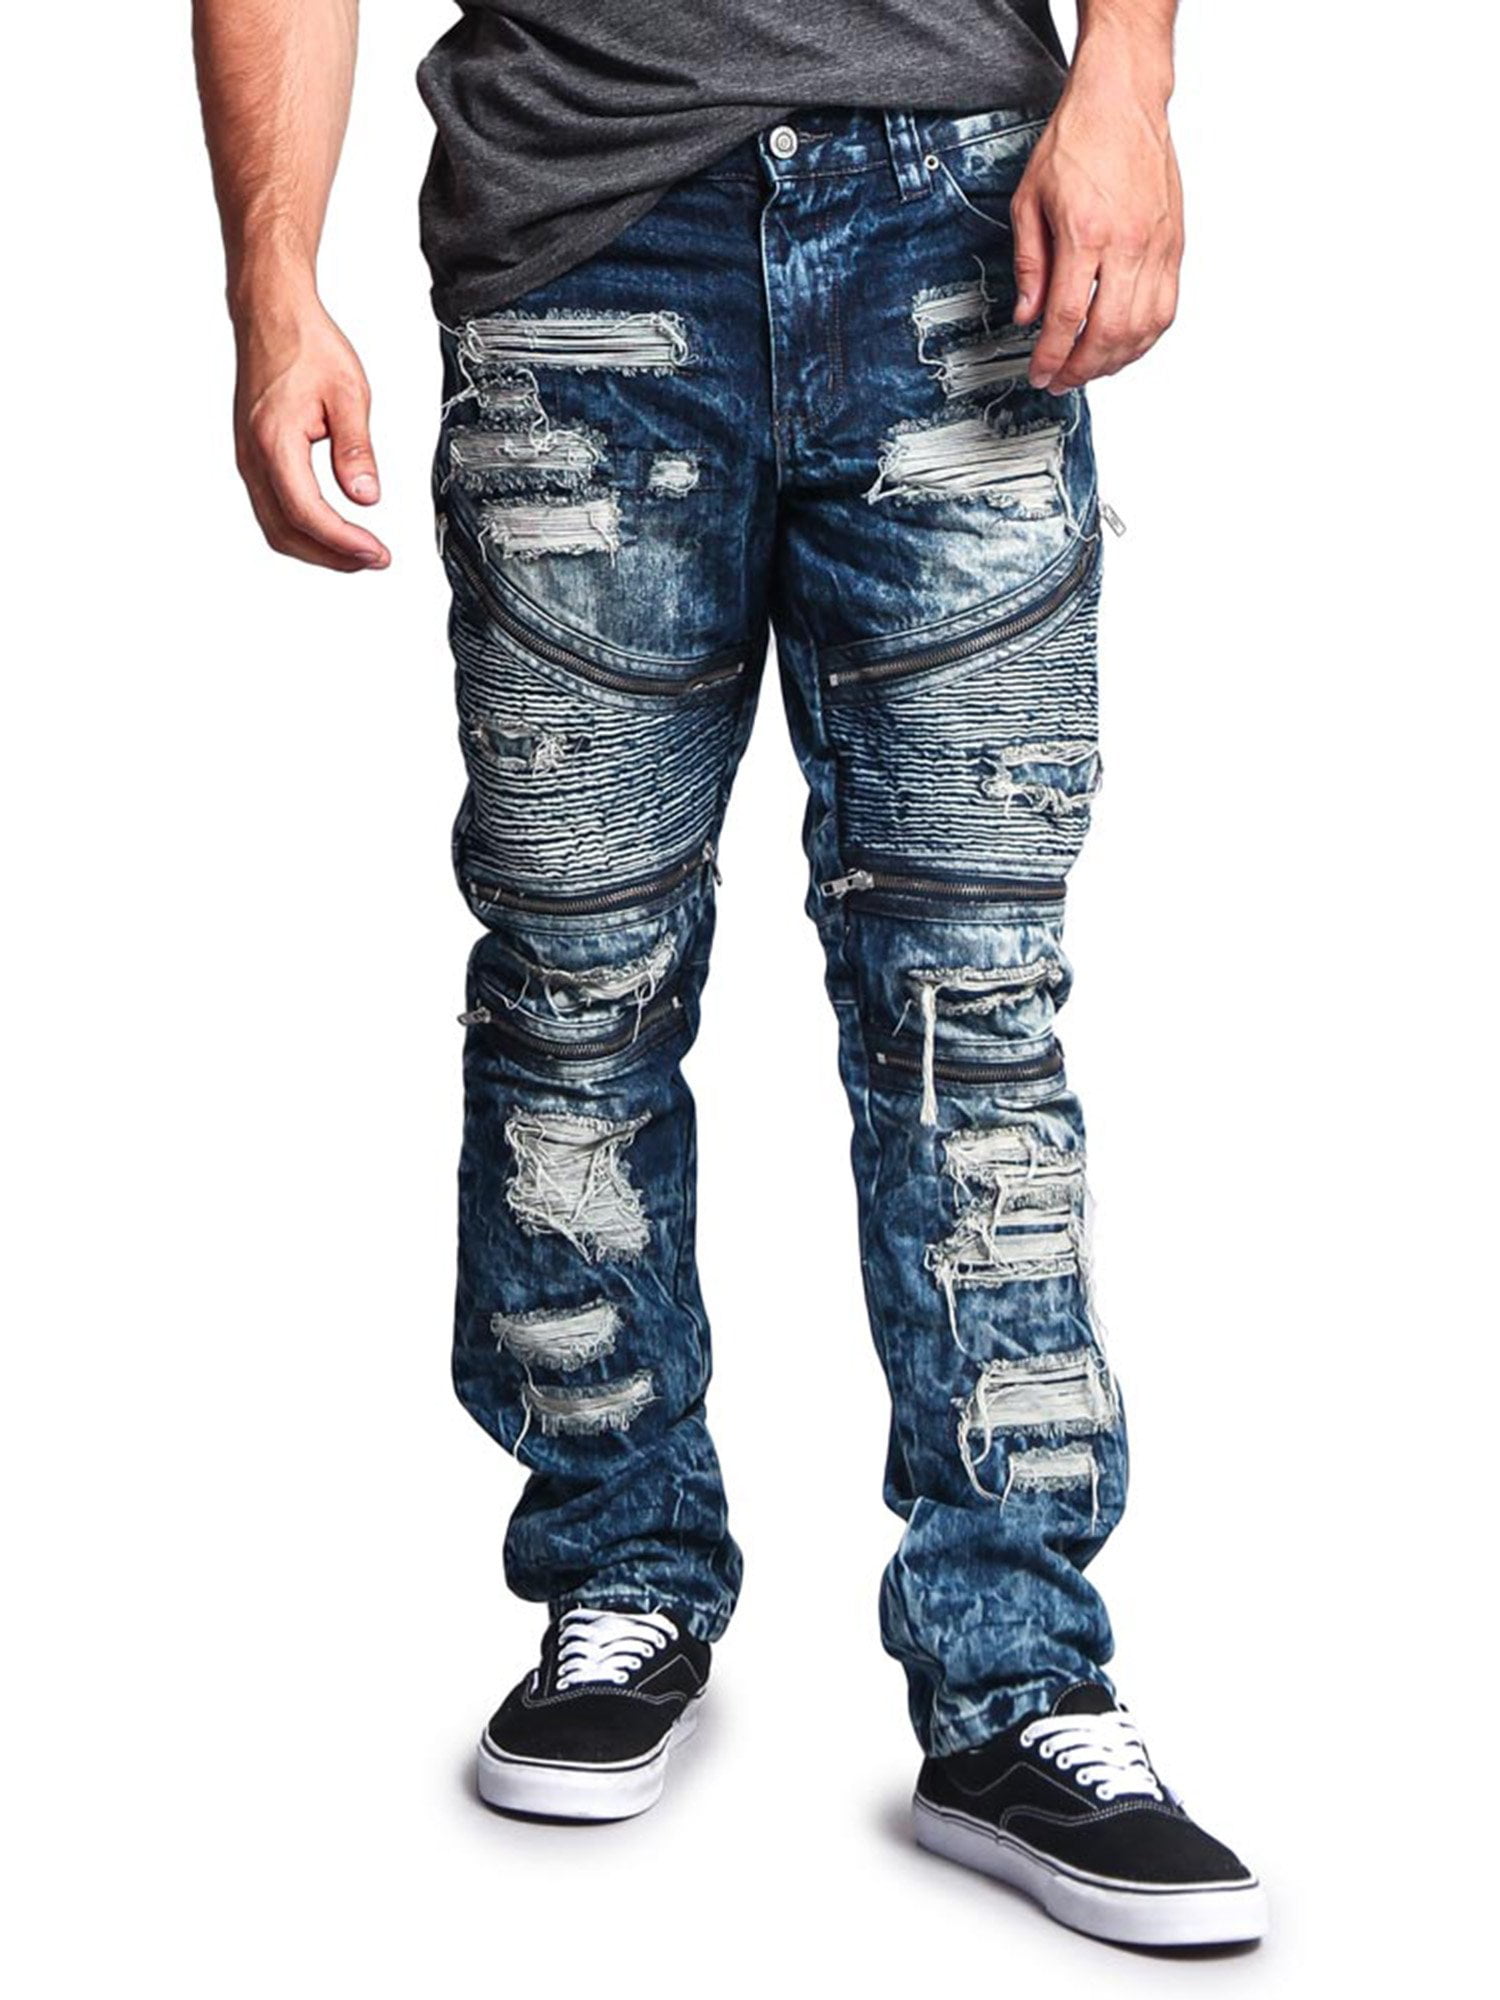 Victorious Men's Distressed Wash Slim Fit Moto Pants Biker Jeans